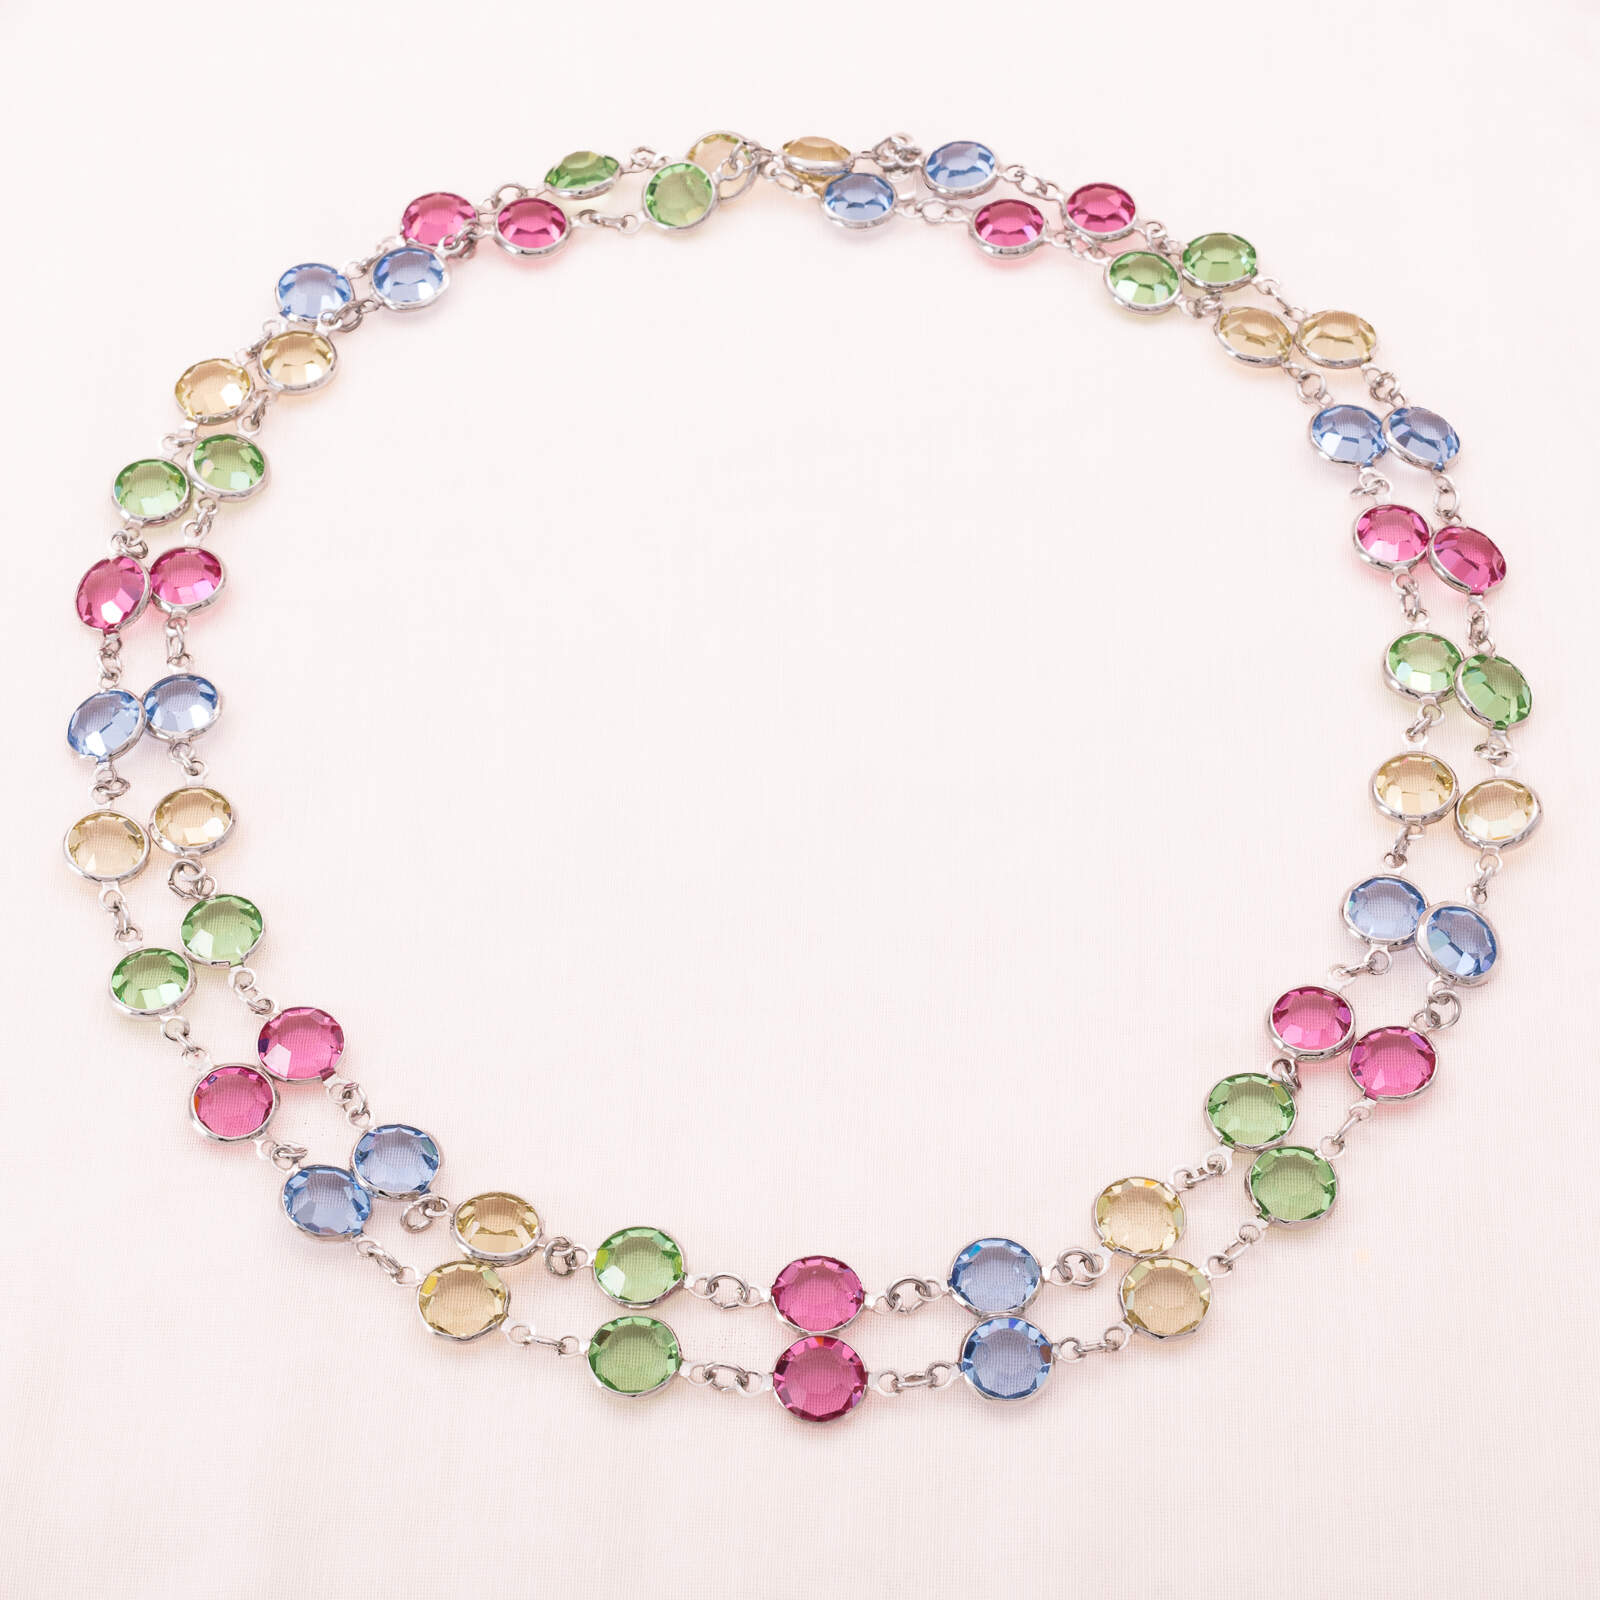 Swarovski-Halskette-bunte-runde-Kristalle-in-silberfarbenen-Fassungen